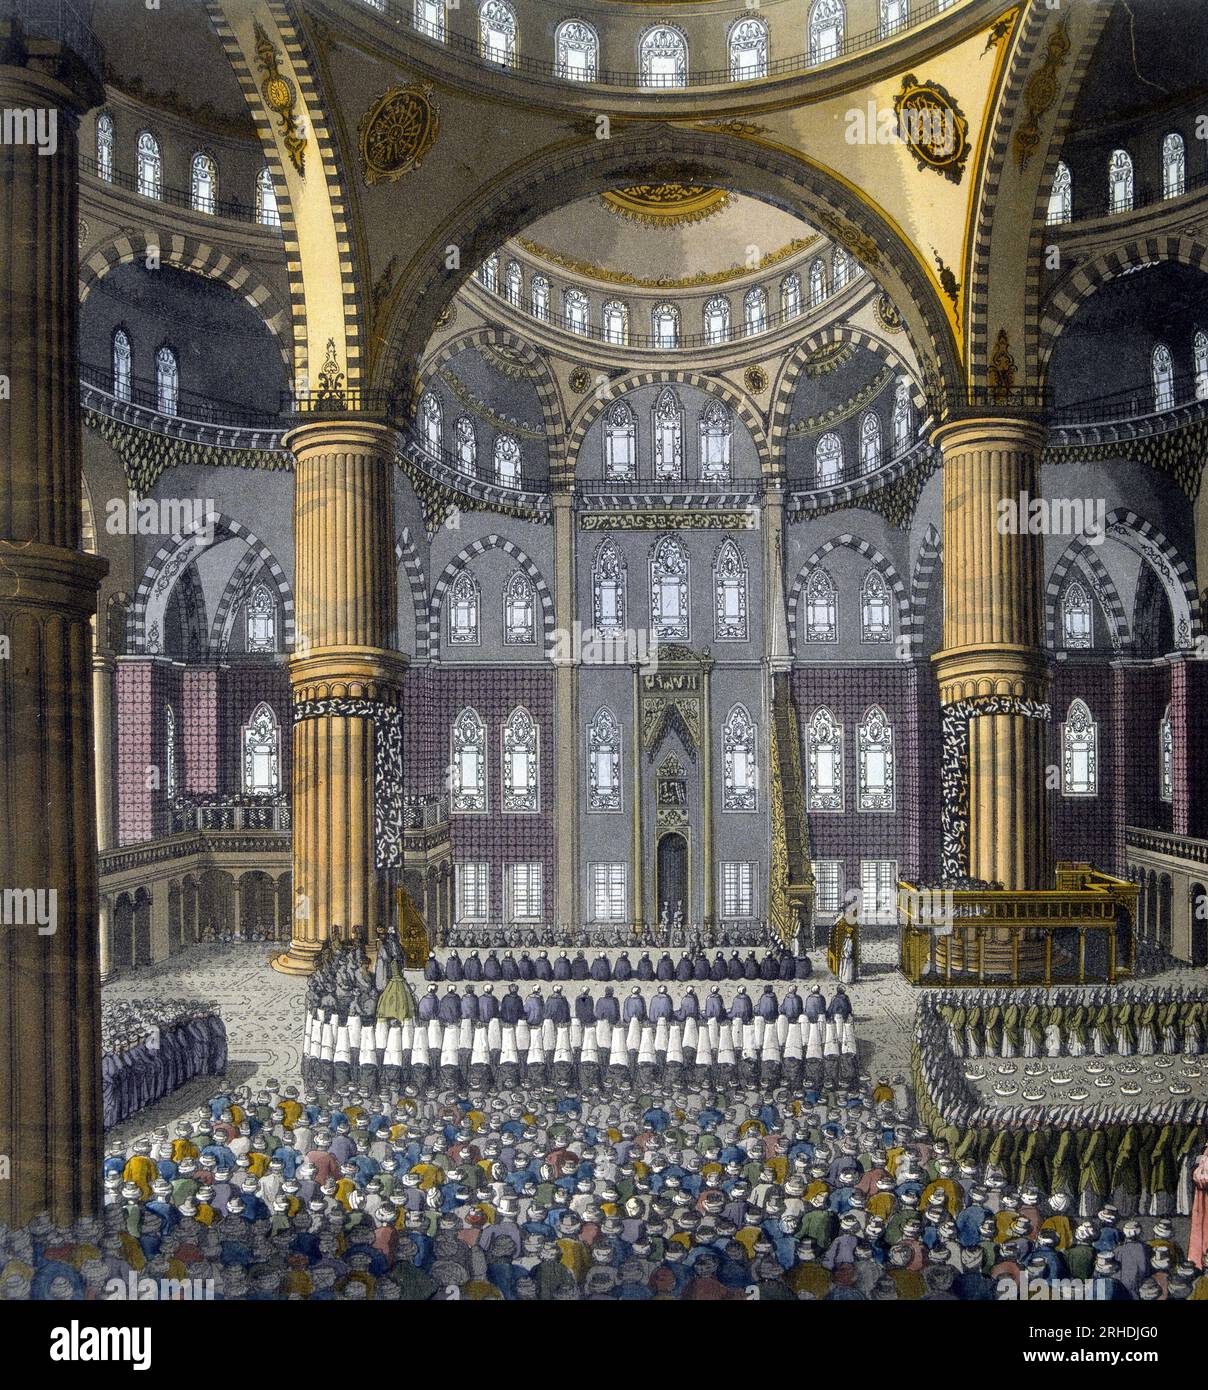 Fête religieuse (fête du Mewlod) dans la mosquee bleue a Constantinople,  debut XIXeme siecle - in 'Le Costume ancien et moderne' de Jules Ferrario, 1819-1820 Stock Photo